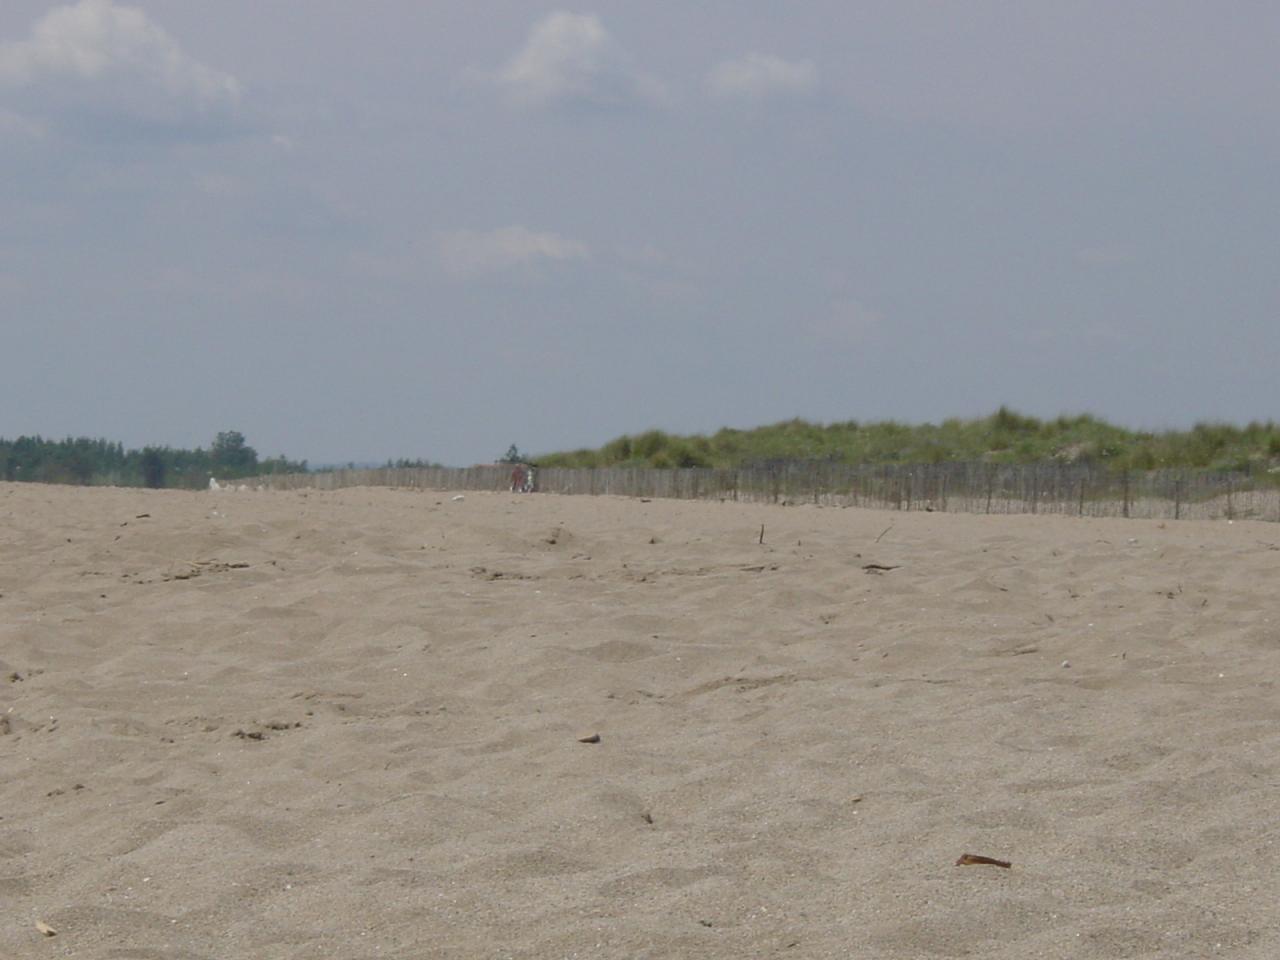 La plage